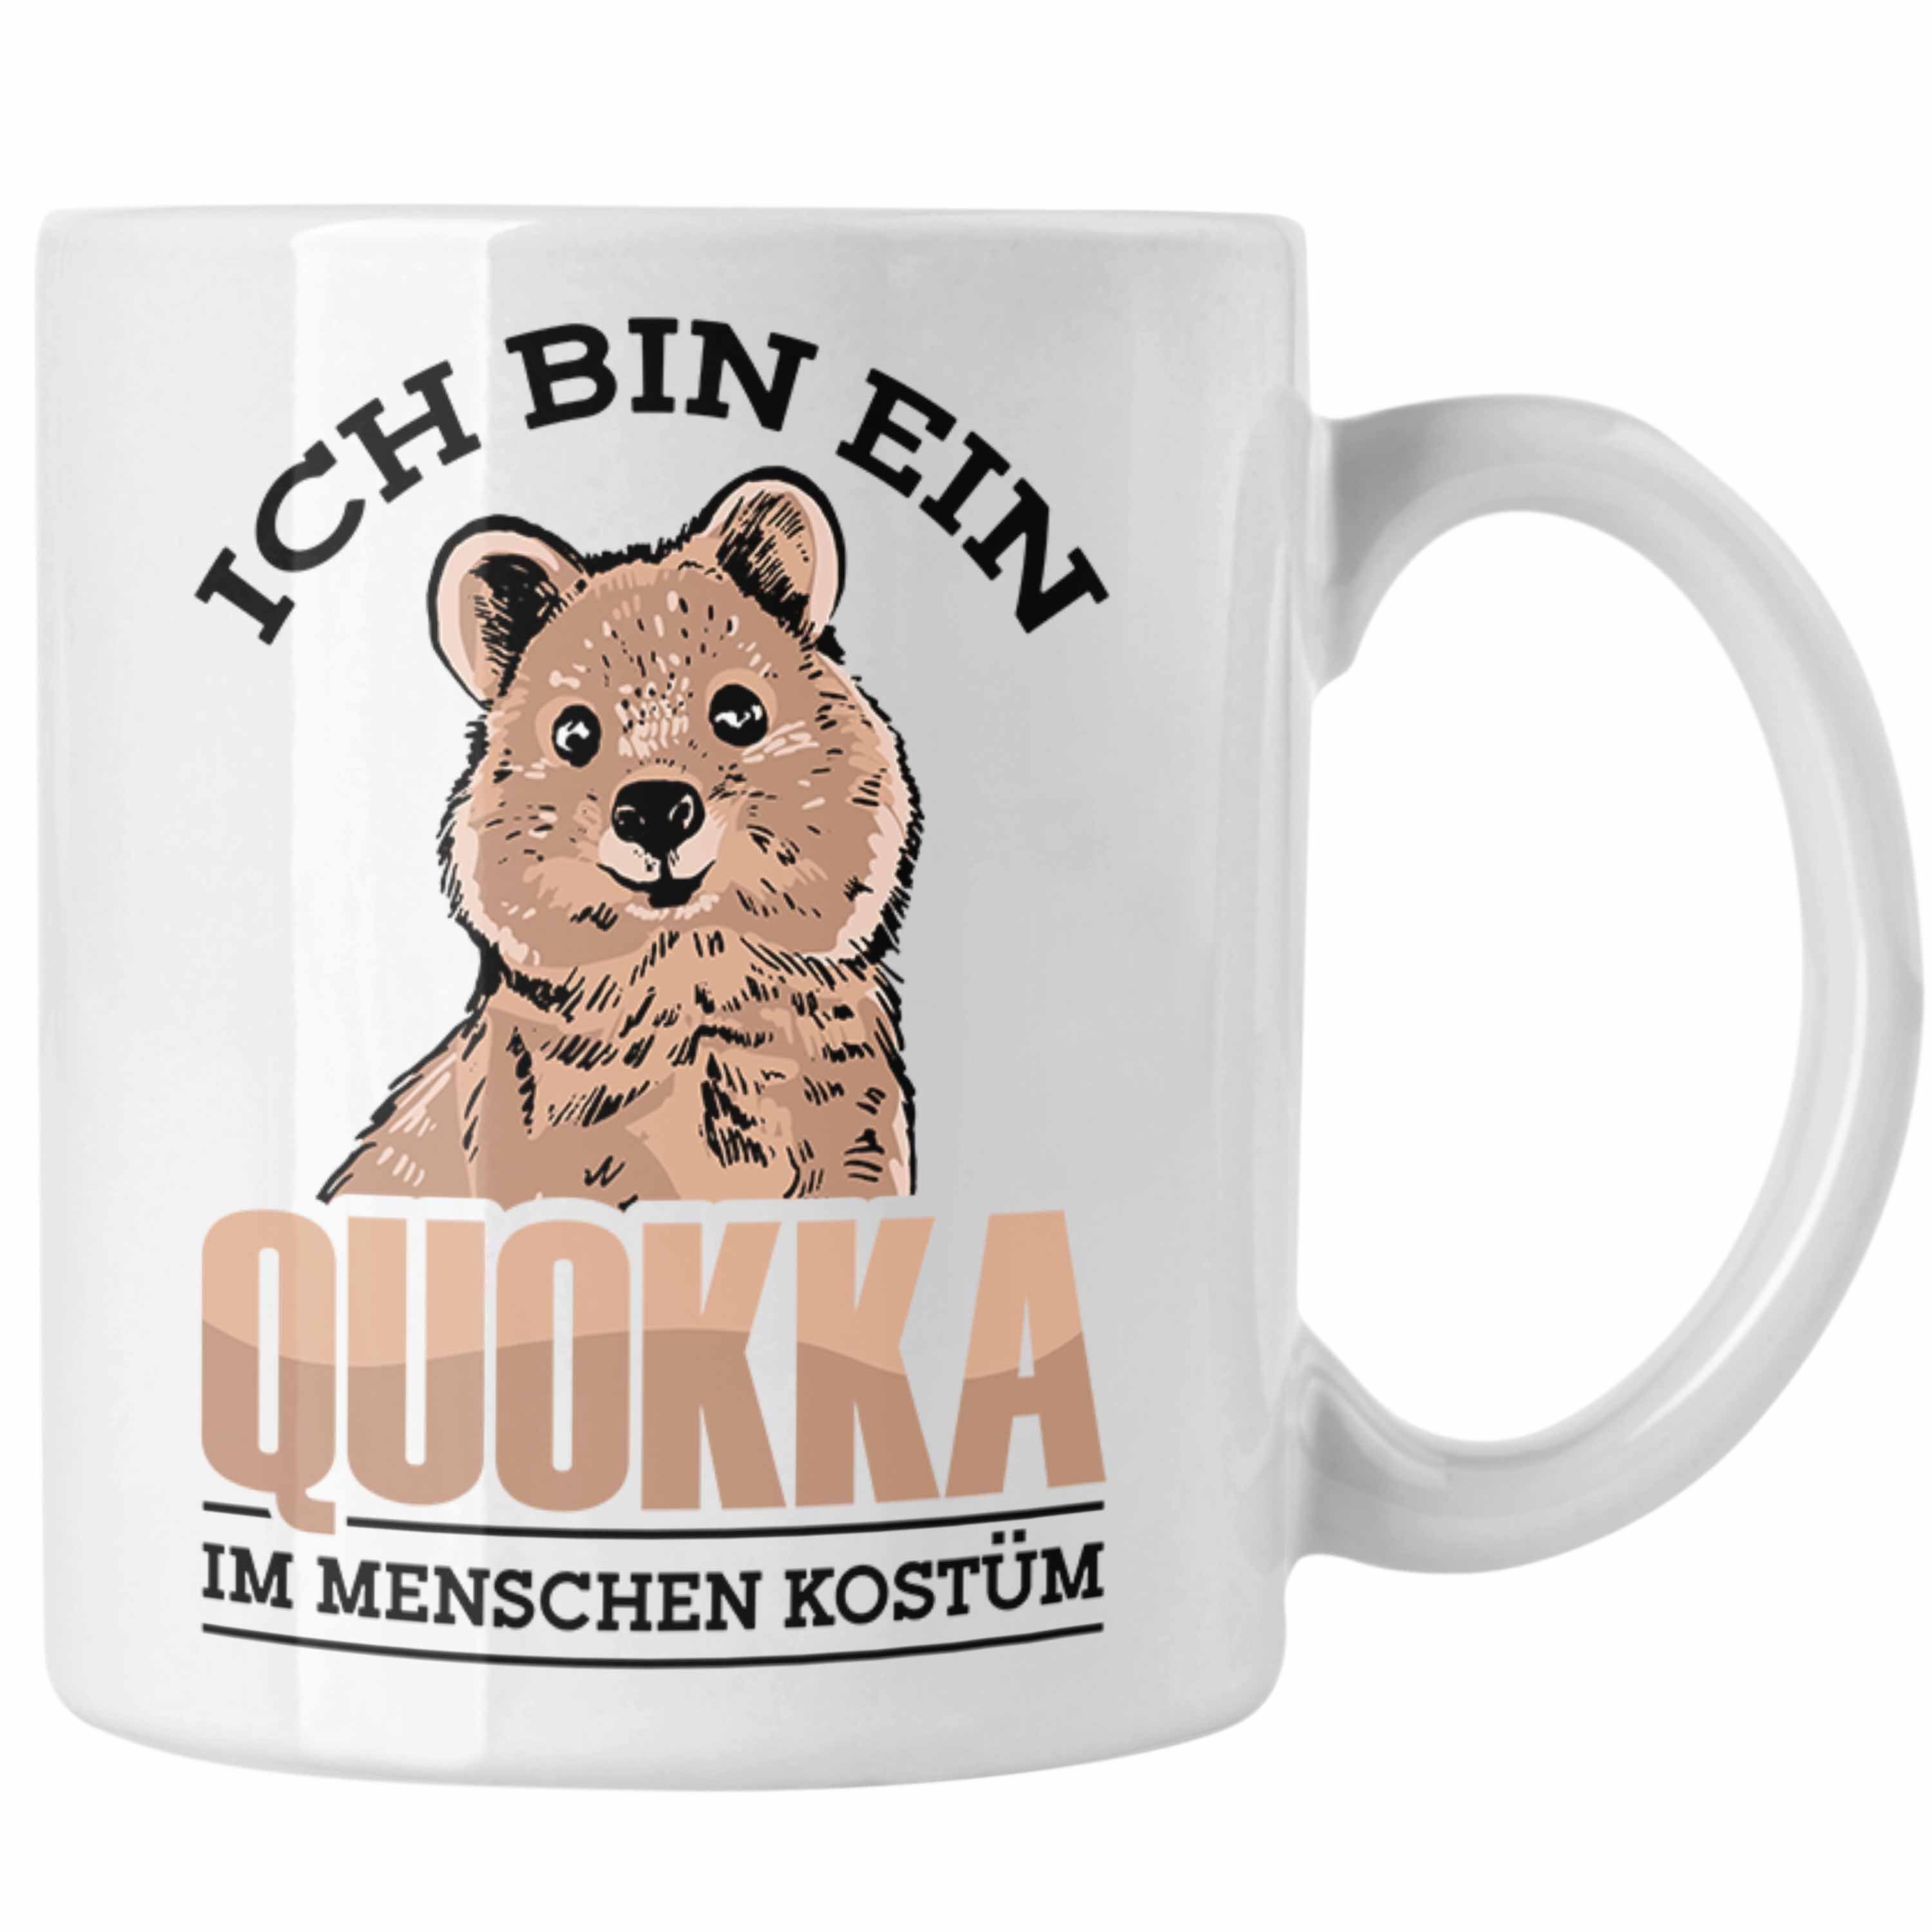 Trendation Tasse Lustige Tasse Quokka-Motiv Geschenk für Quokka Liebhaber Menschen Kos Weiss